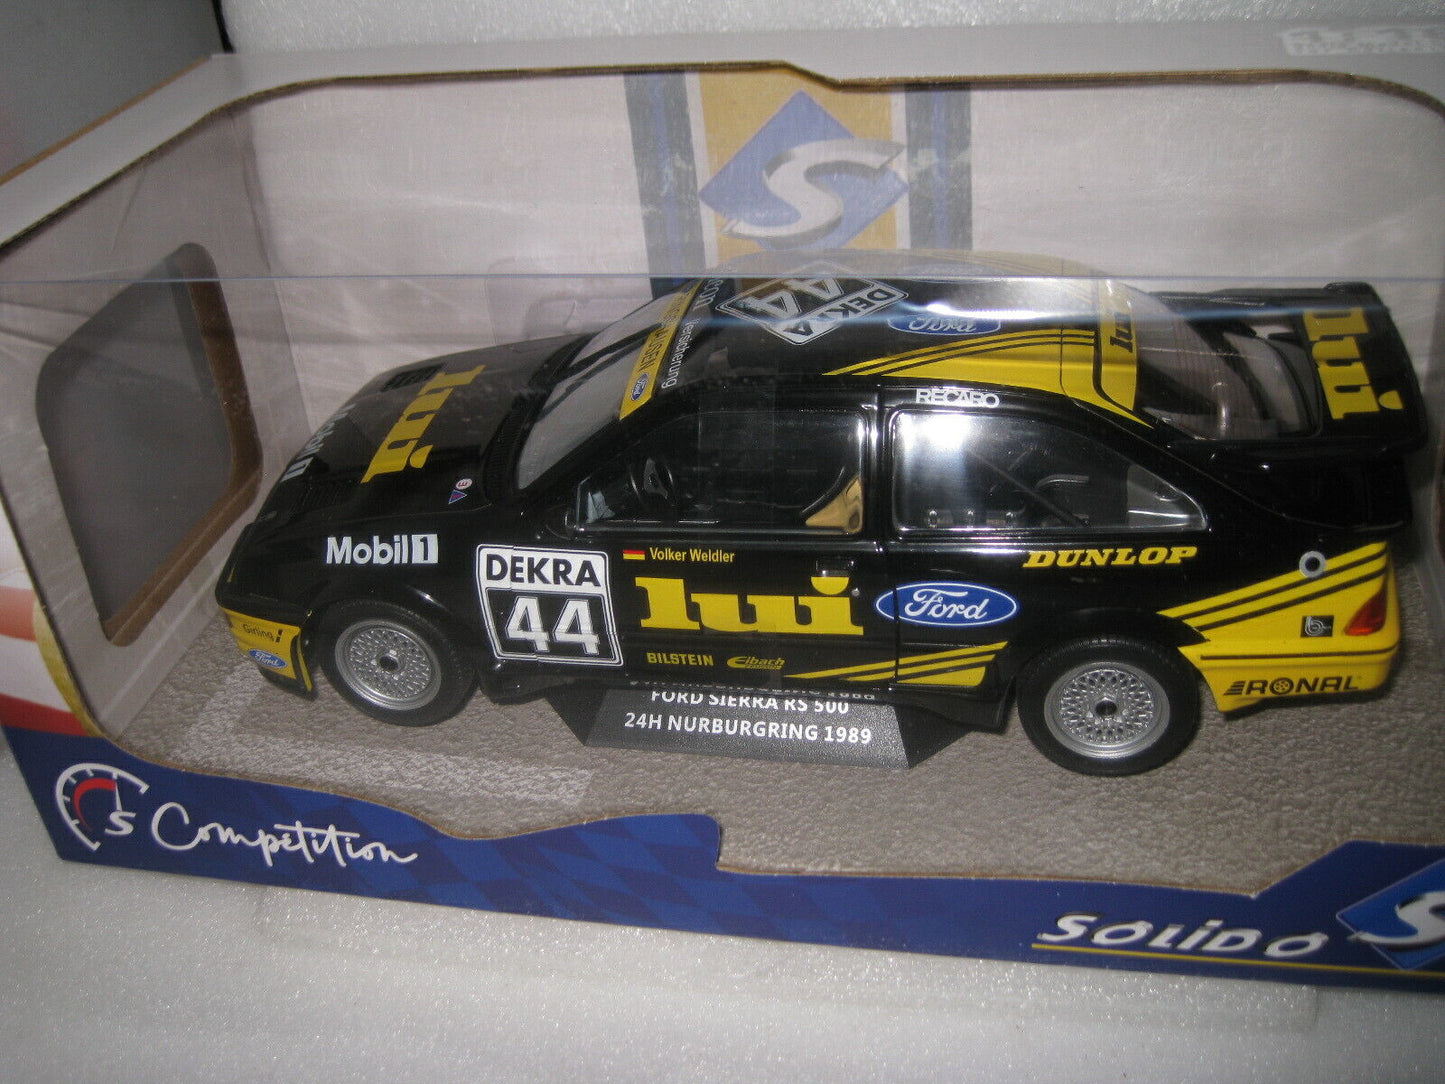 SOLIDO 1/18 Ford Sierra RS500 24hr Nurburgring 1989 #44 VOLKER WELDLER #S1806101